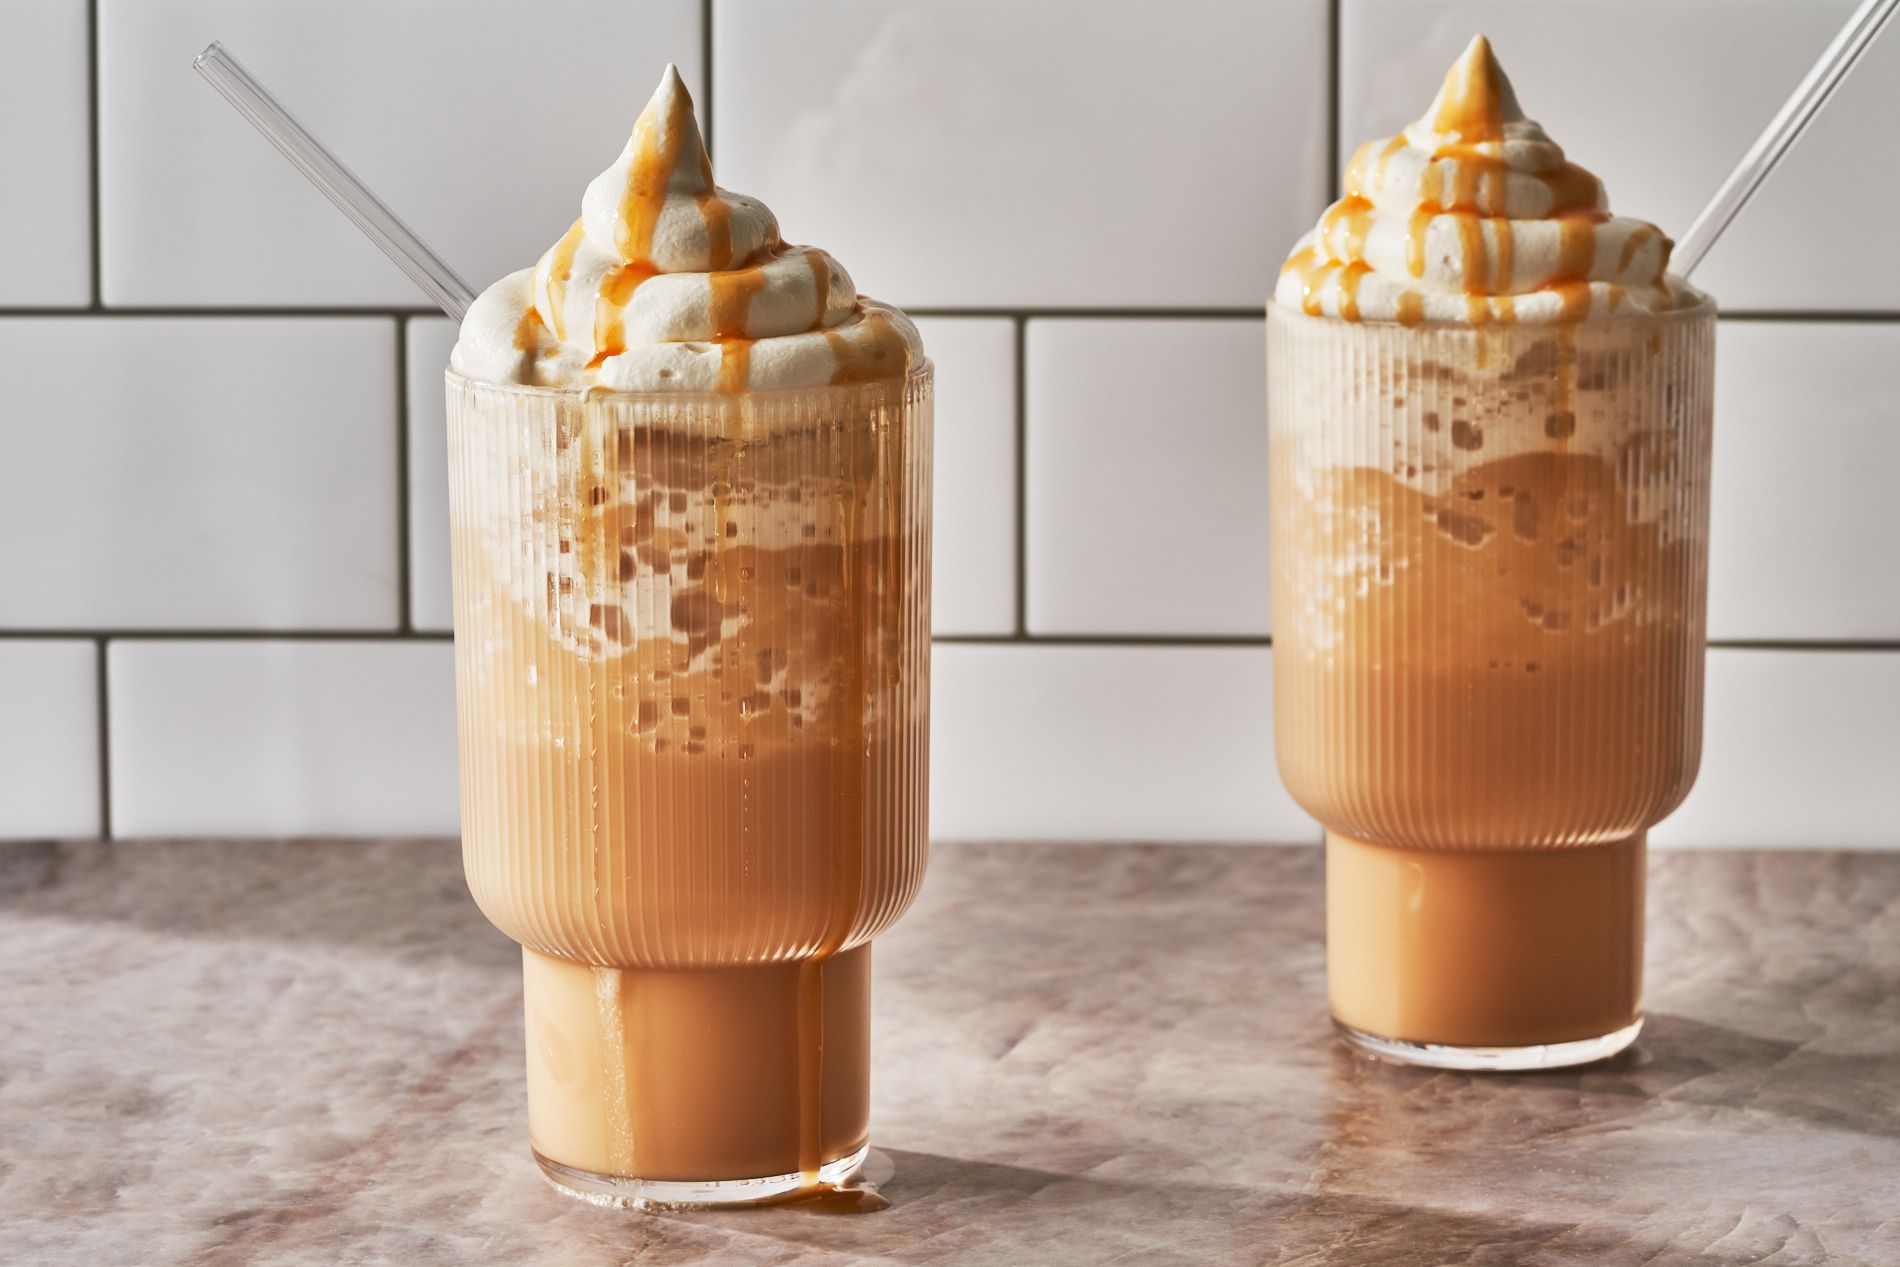 Vriendin Sloppenwijk Bezwaar Zelf frappuccino maken - dit zijn makkelijke ijskoffie recepten